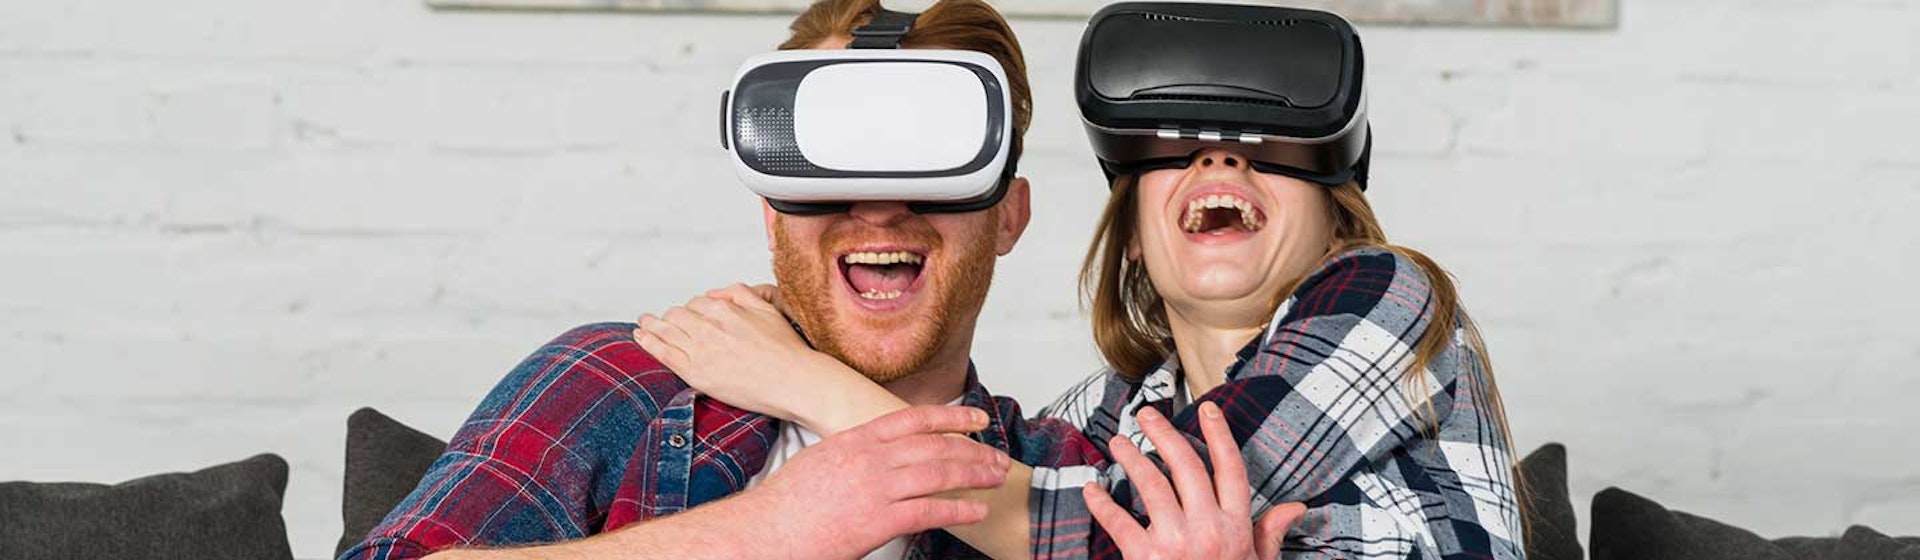 Aplicaciones para gafas de realidad virtual: ¡mira el mundo con otros ojos!